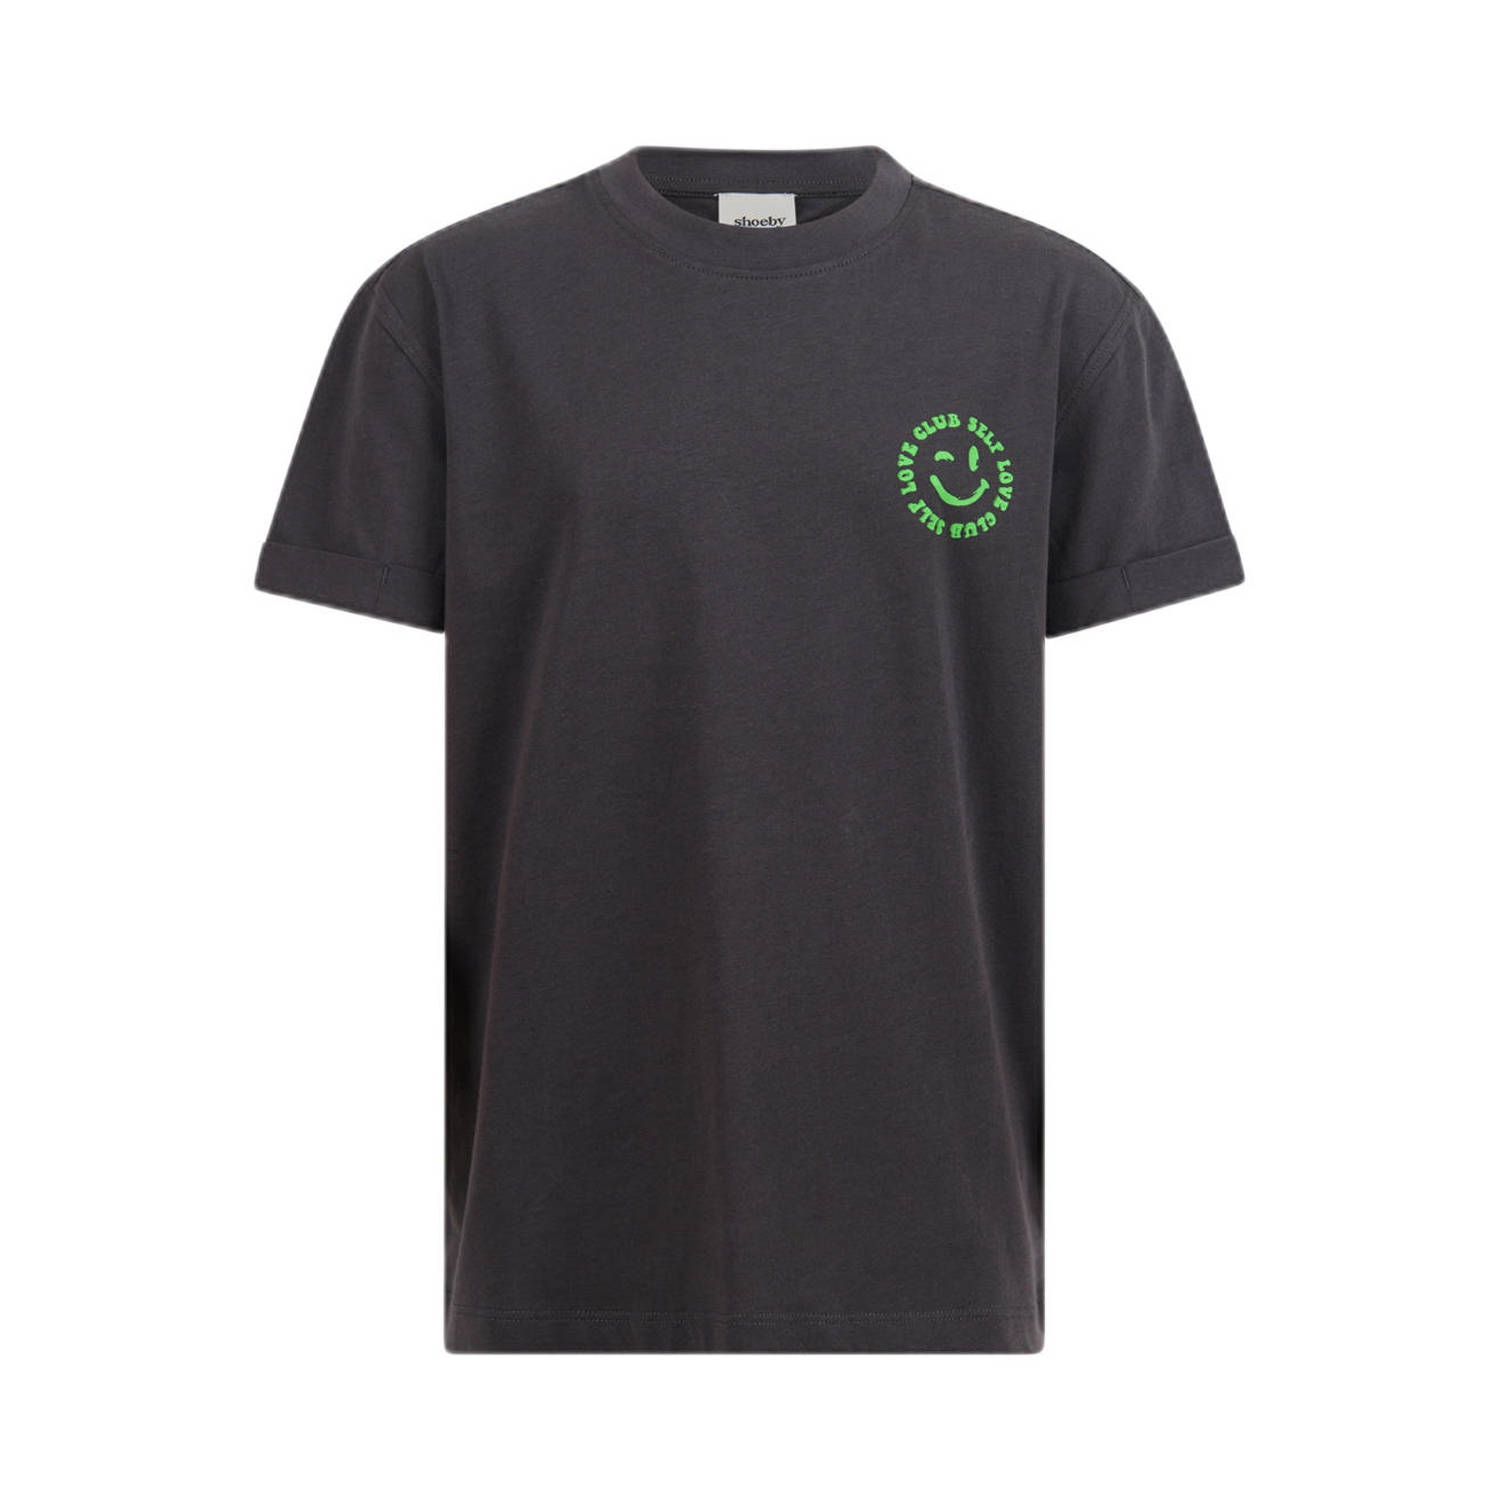 Shoeby T-shirt met backprint donkergrijs groen Meisjes Katoen Ronde hals 110 116